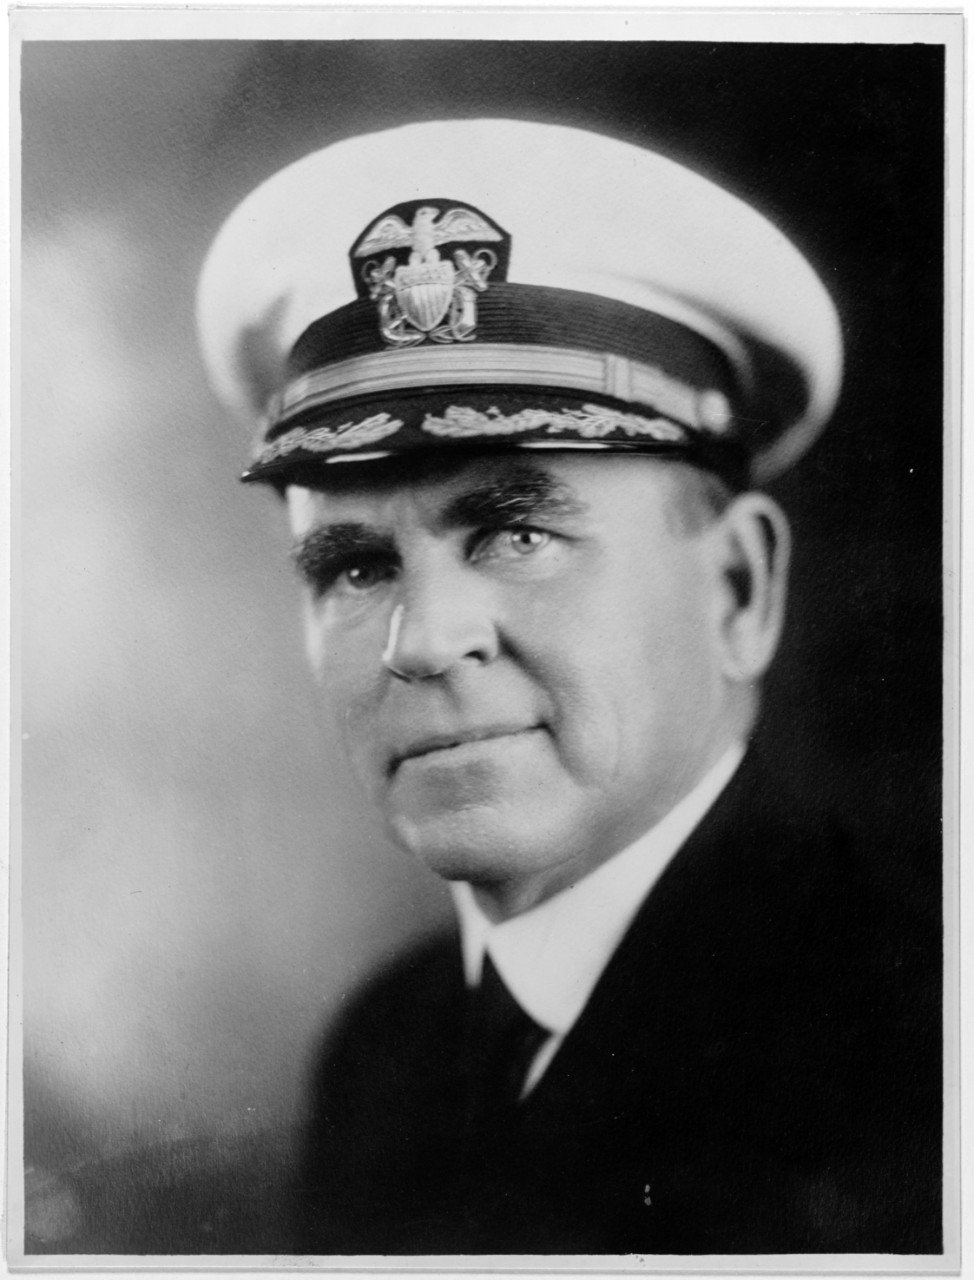 Captain William D. Puleston, USN